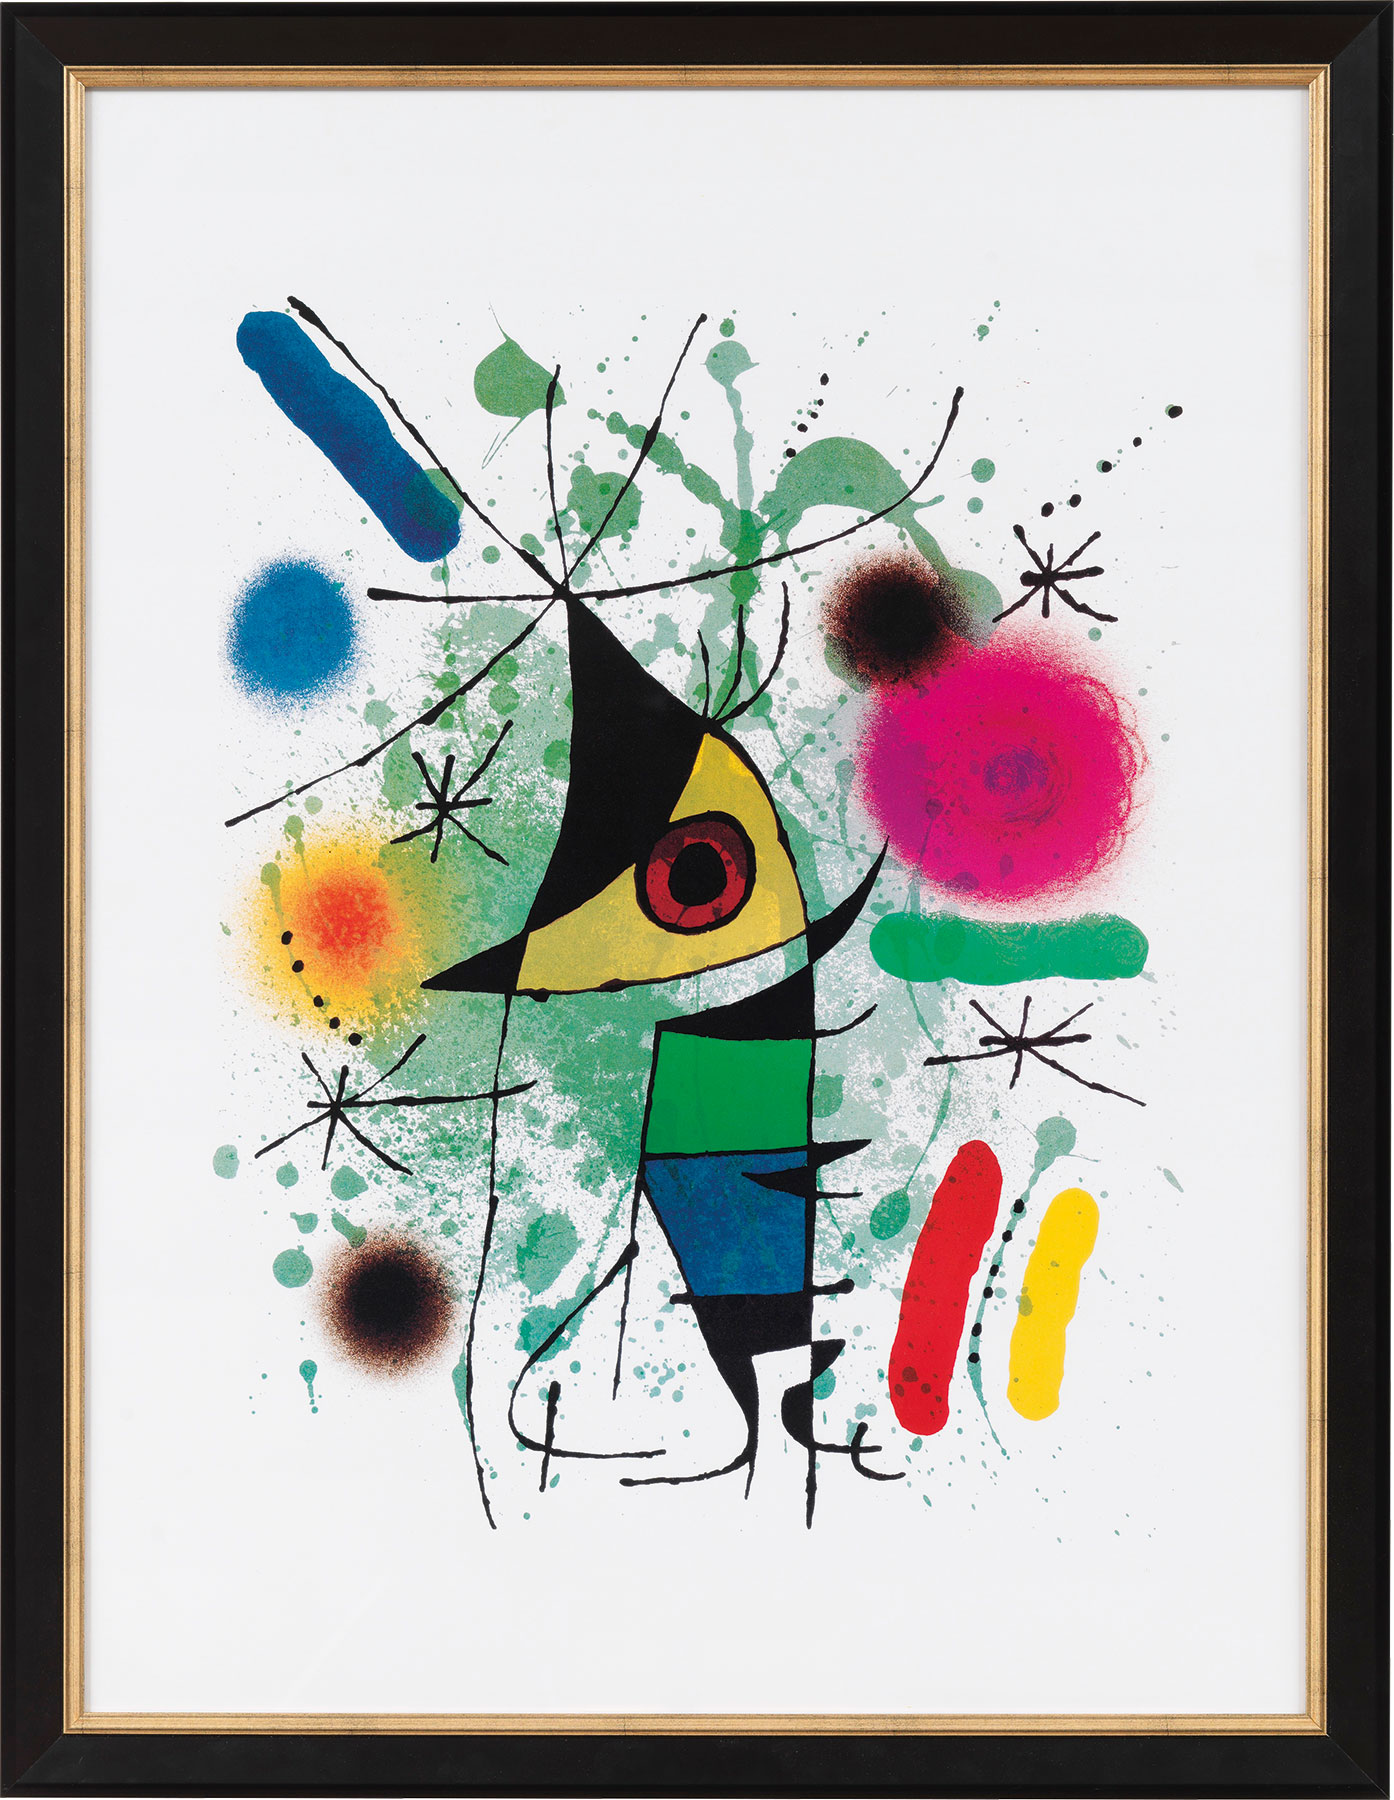 Gemälde "Der singende Fisch" (1972) - Miró